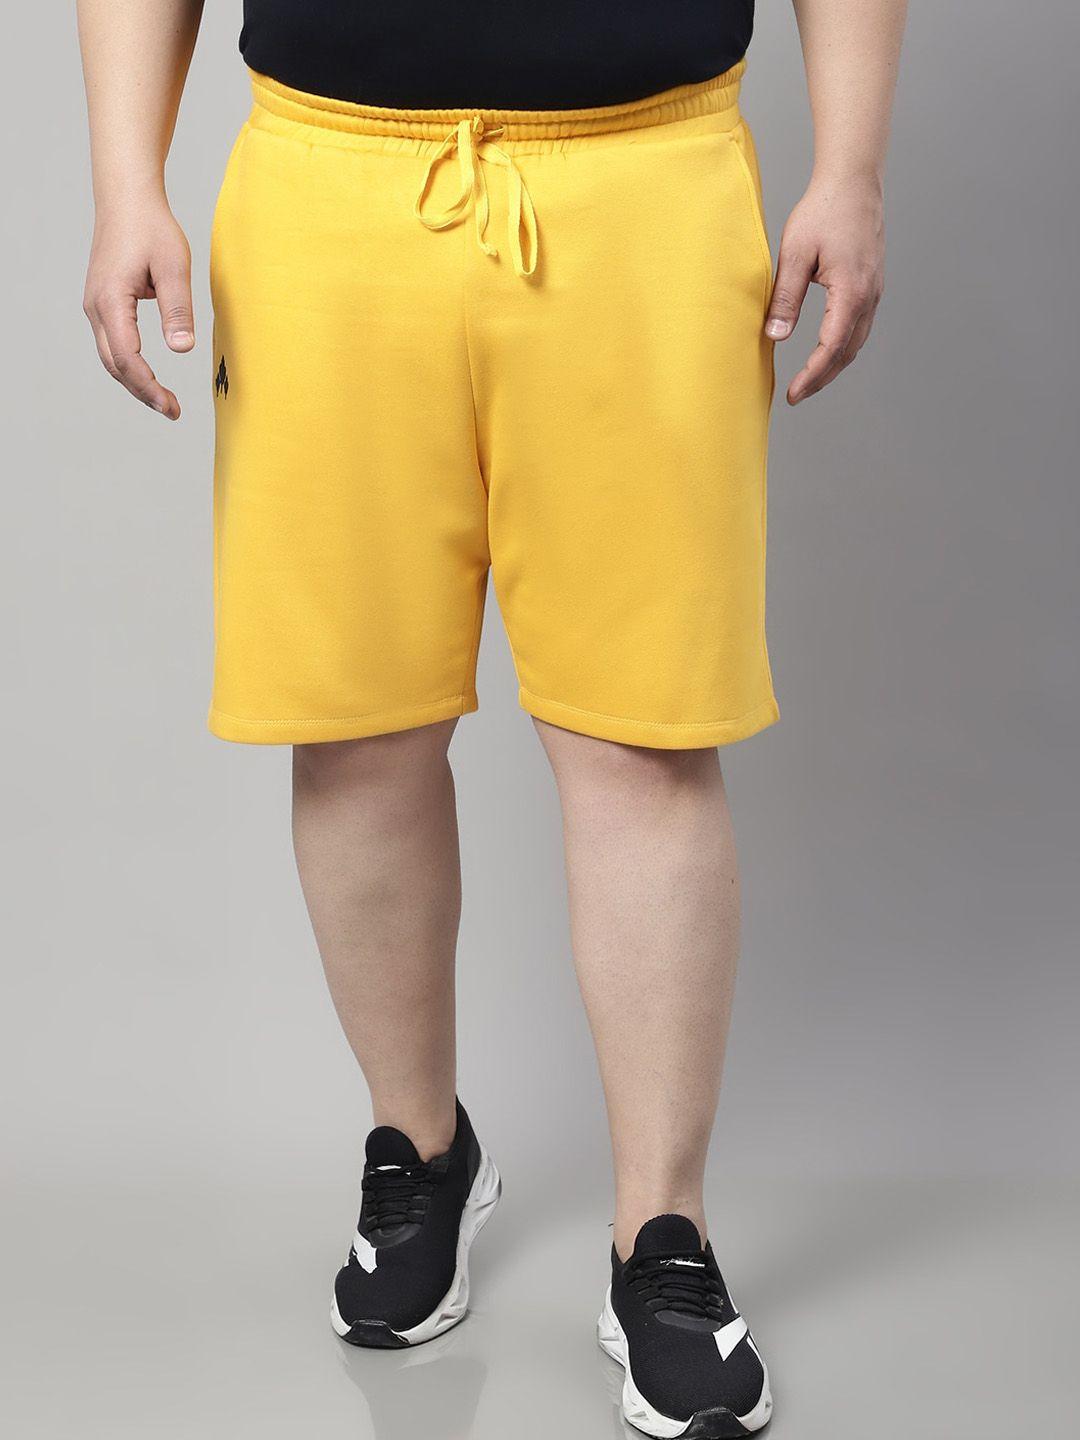 rute men yellow running shorts